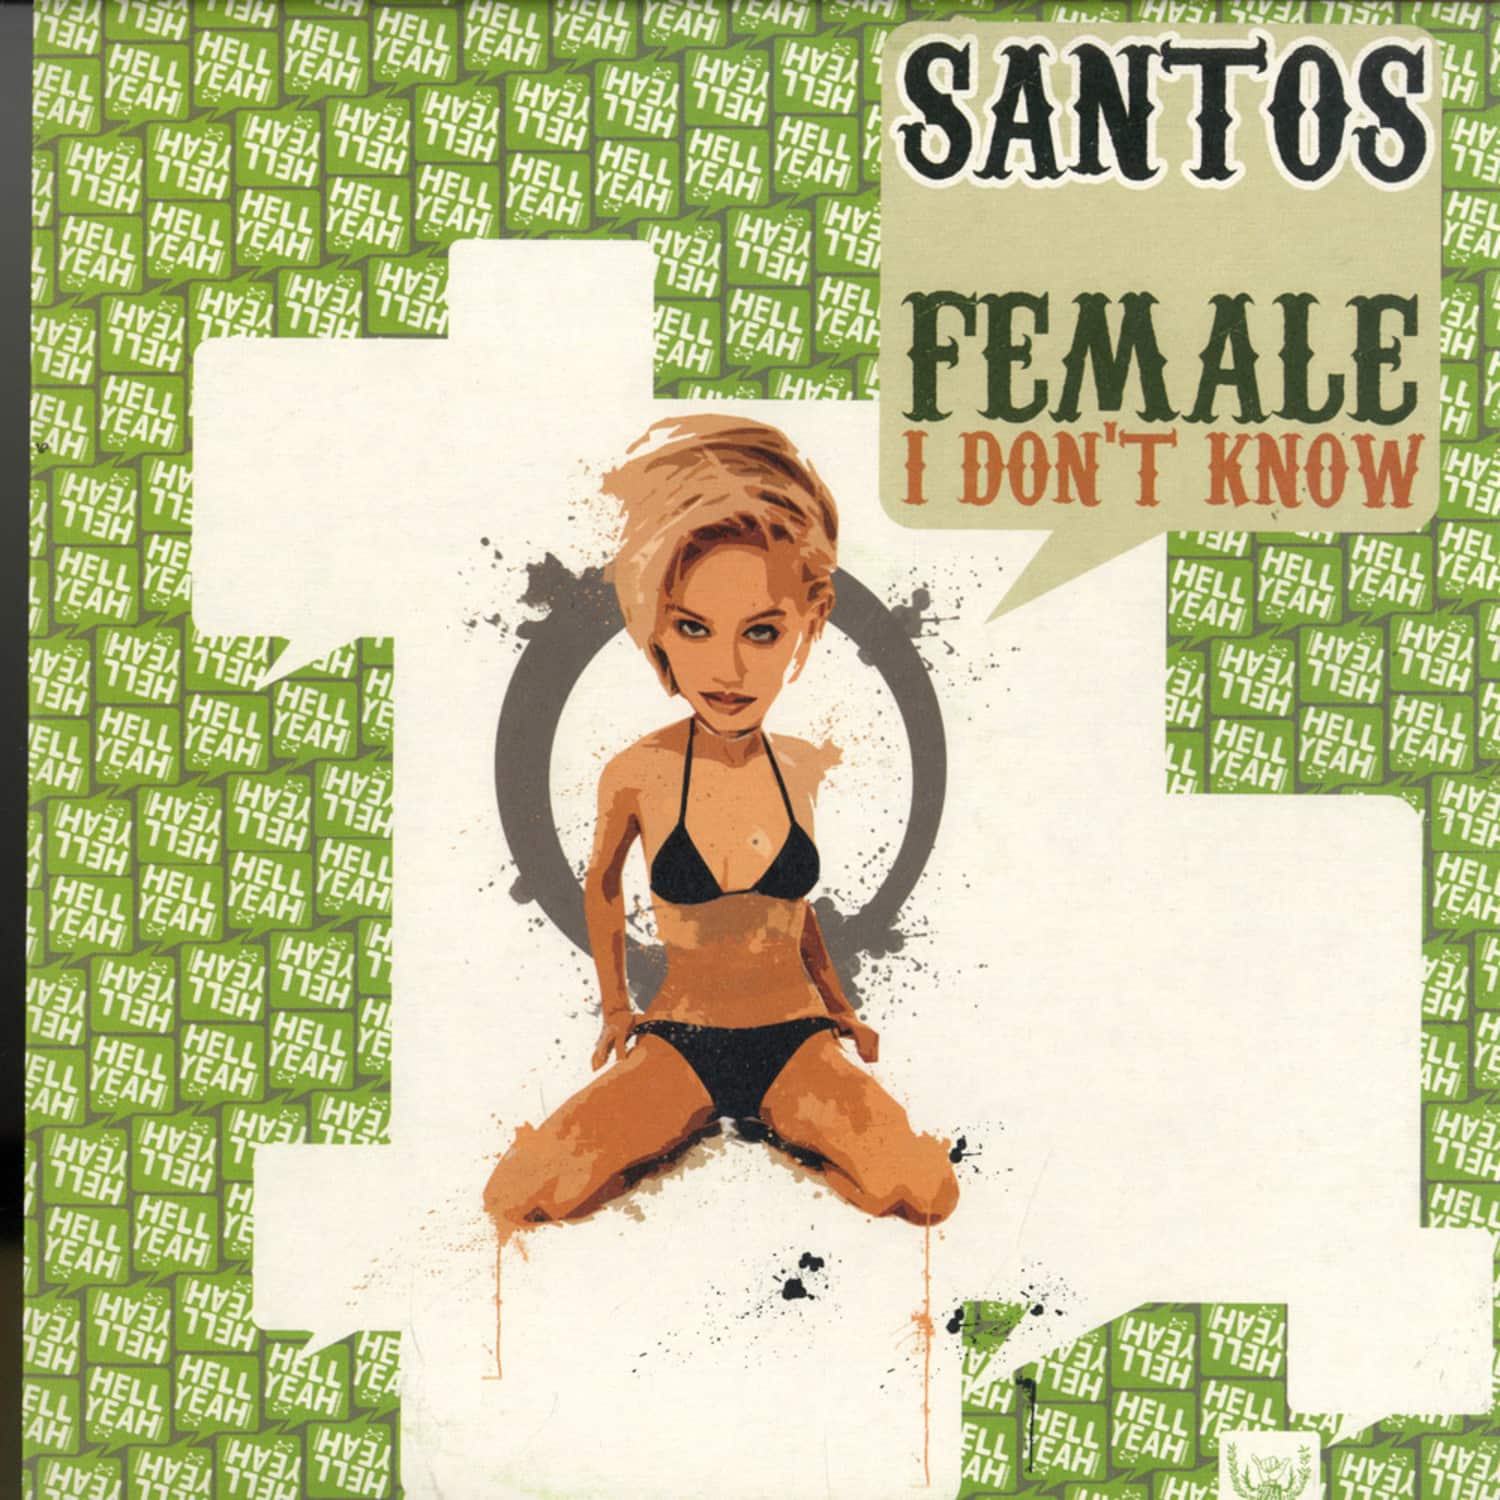 Santos - FEMALE / I DONT KNOW